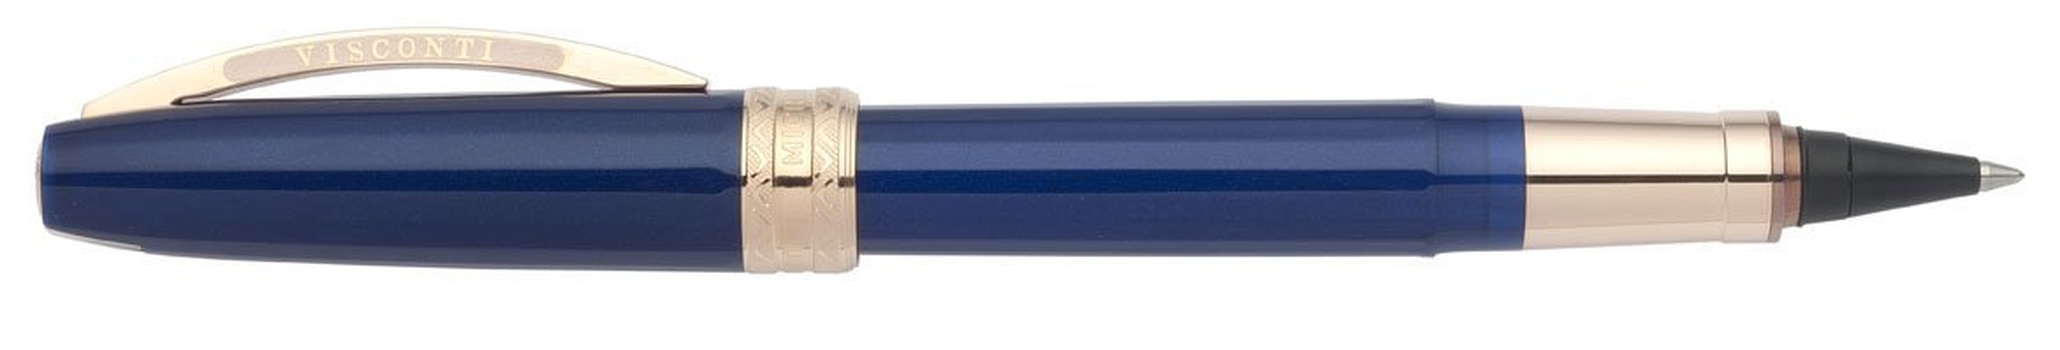 29620 Michelangelo 2014 Navy Blue RG Ручка Роллер Visconti